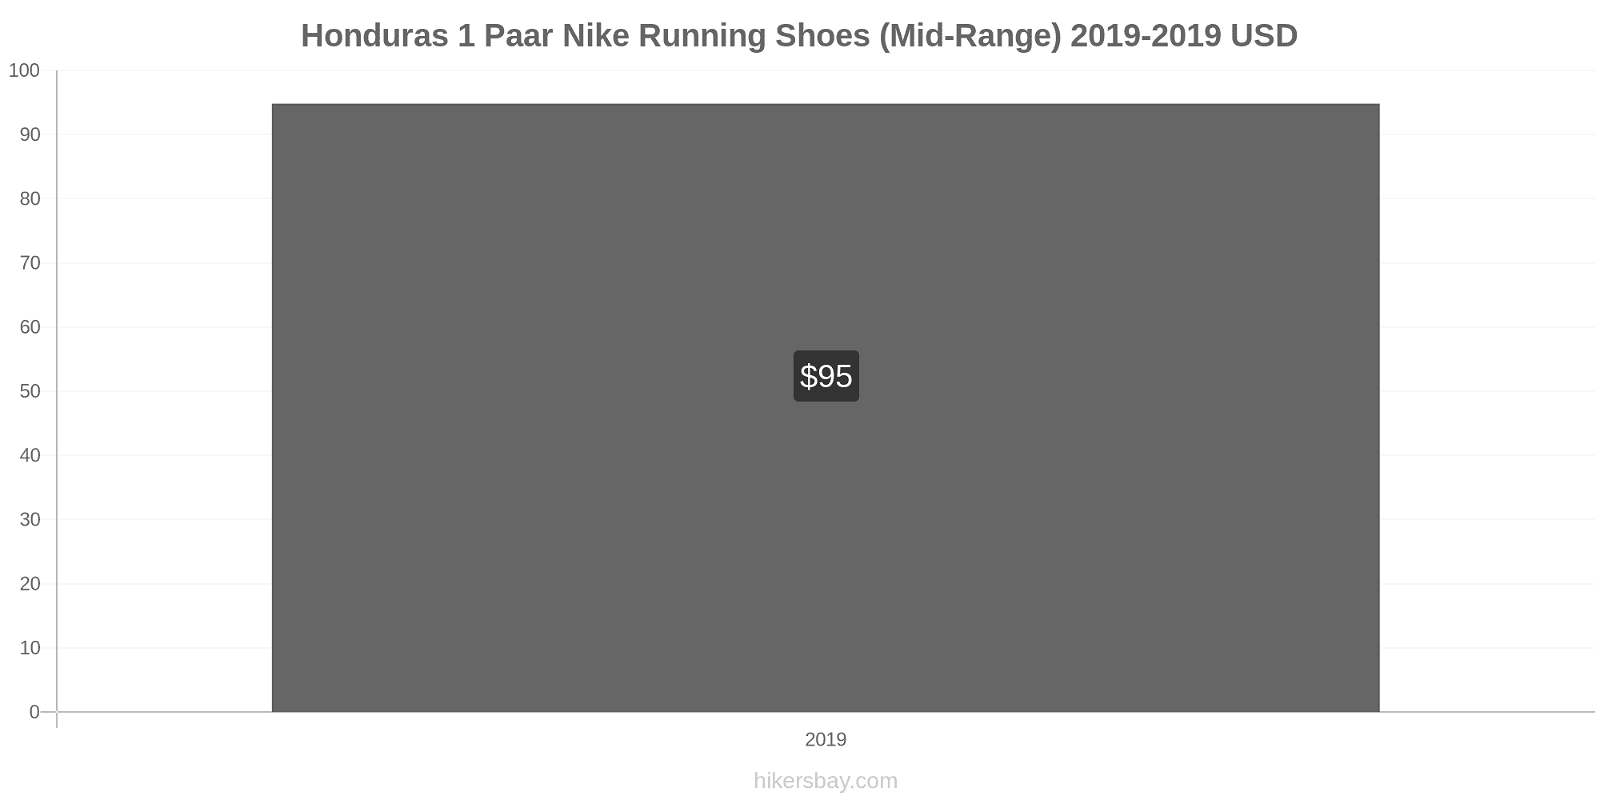 Honduras prijswijzigingen 1 paar Nike hardloopschoenen (uit de middenklasse) hikersbay.com